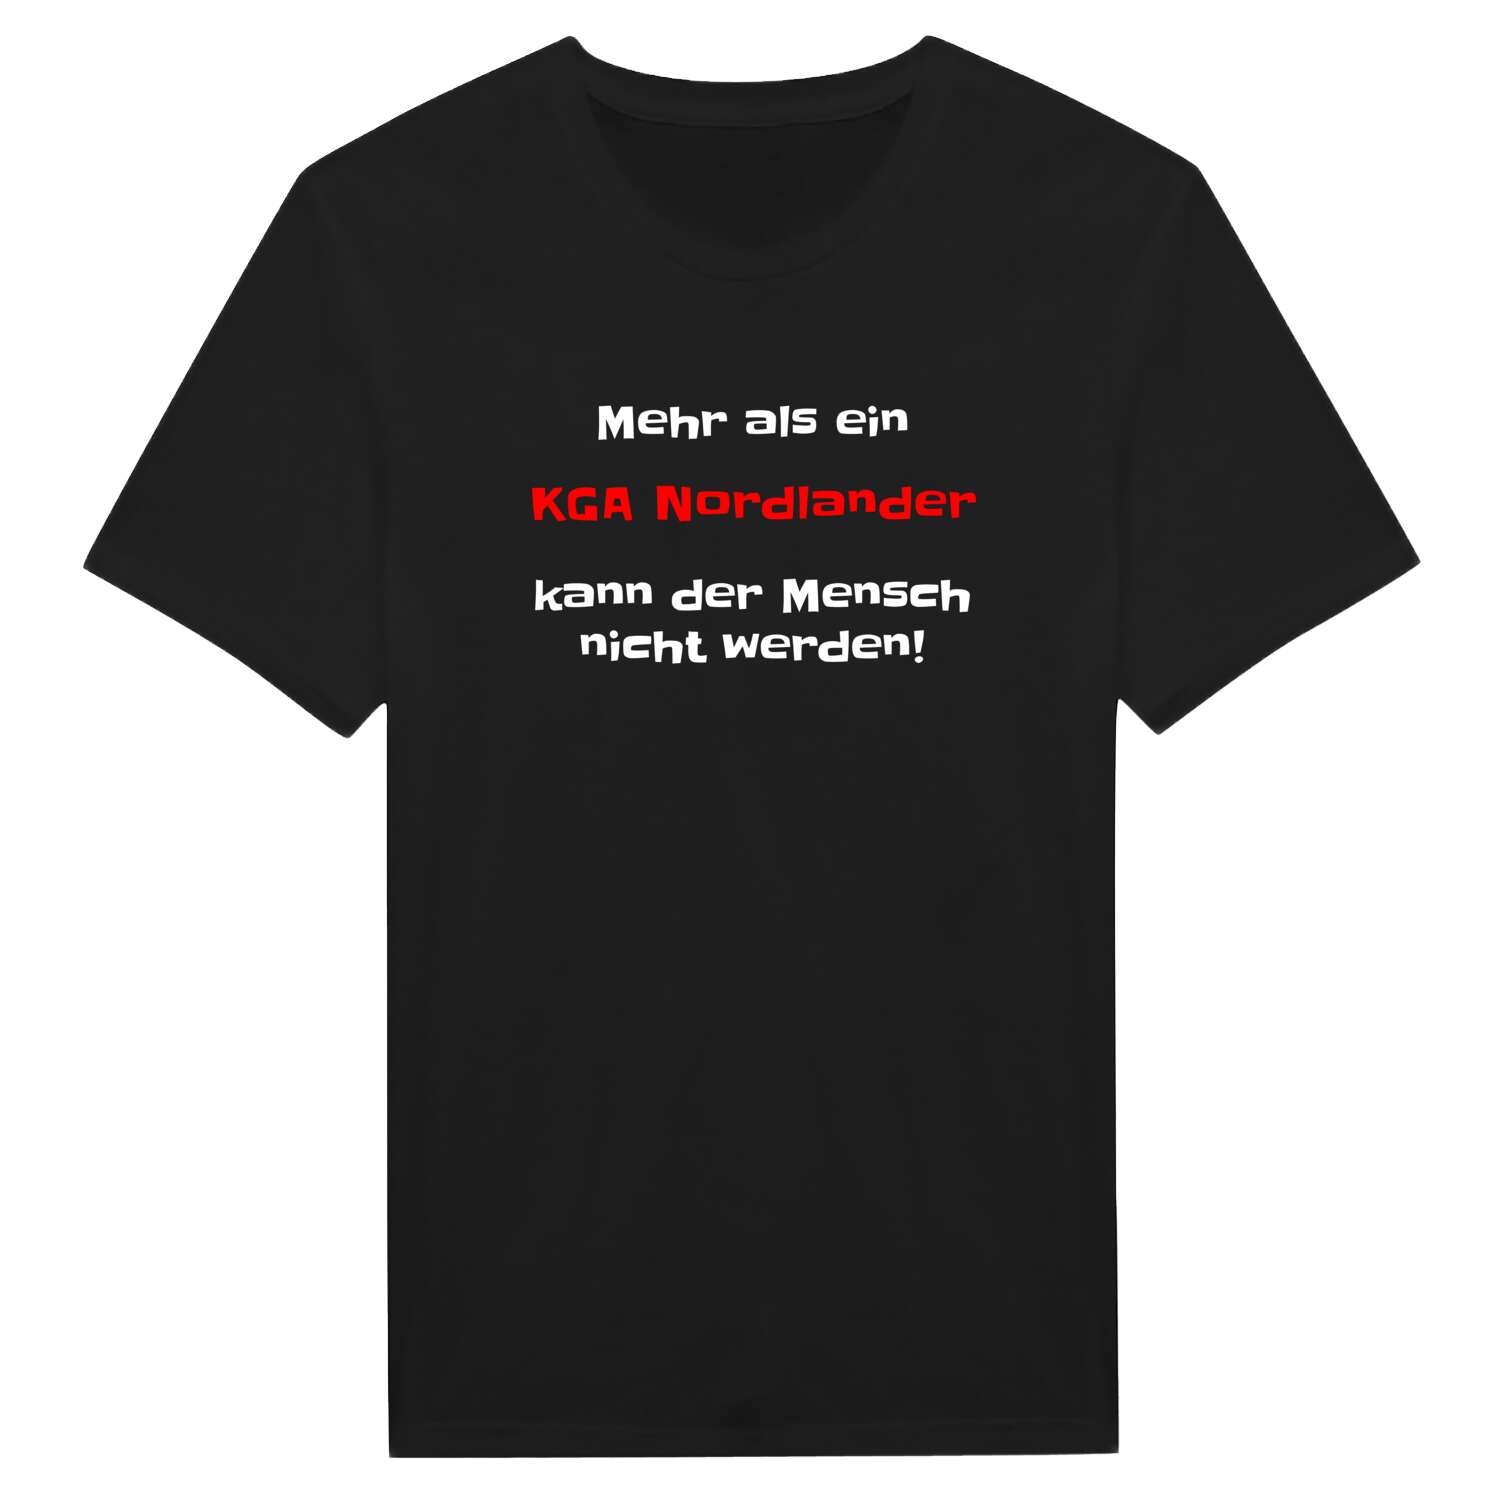 KGA Nordland T-Shirt »Mehr als ein«